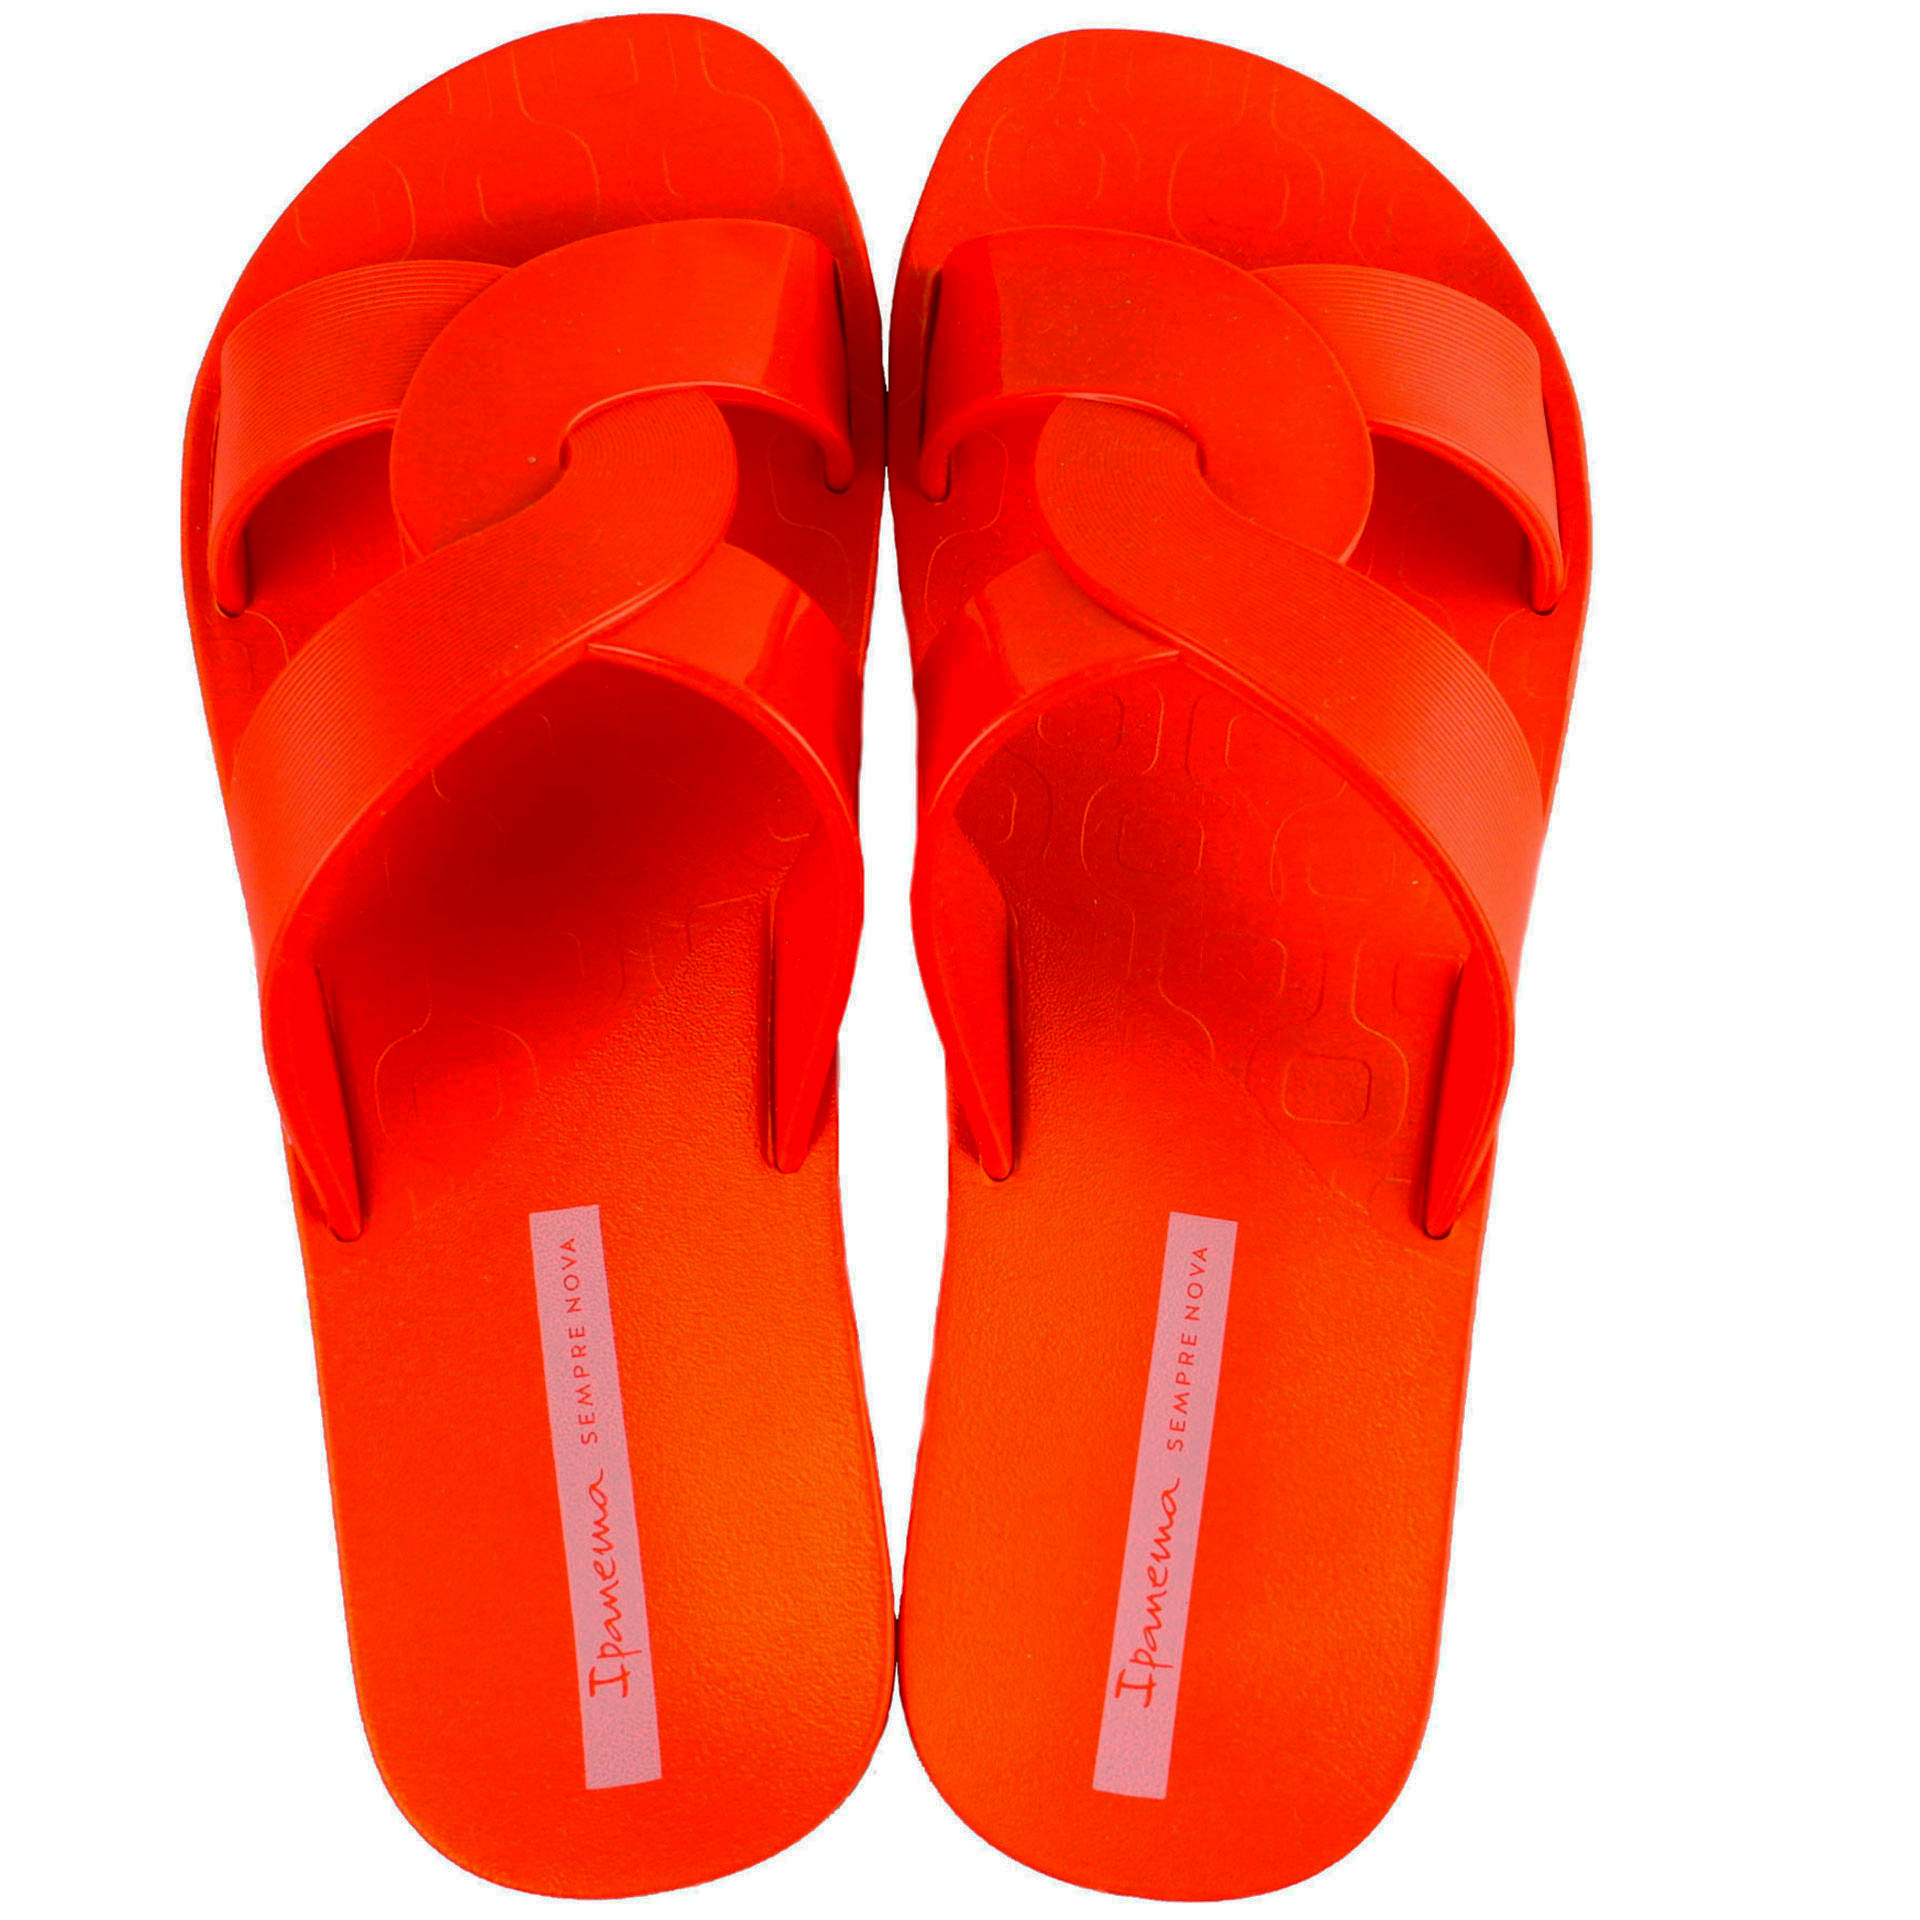 Пляжная обувь для девочки - шлепки подростковые (2013) 36-42 размеры, цвет Красный – Sole Kids